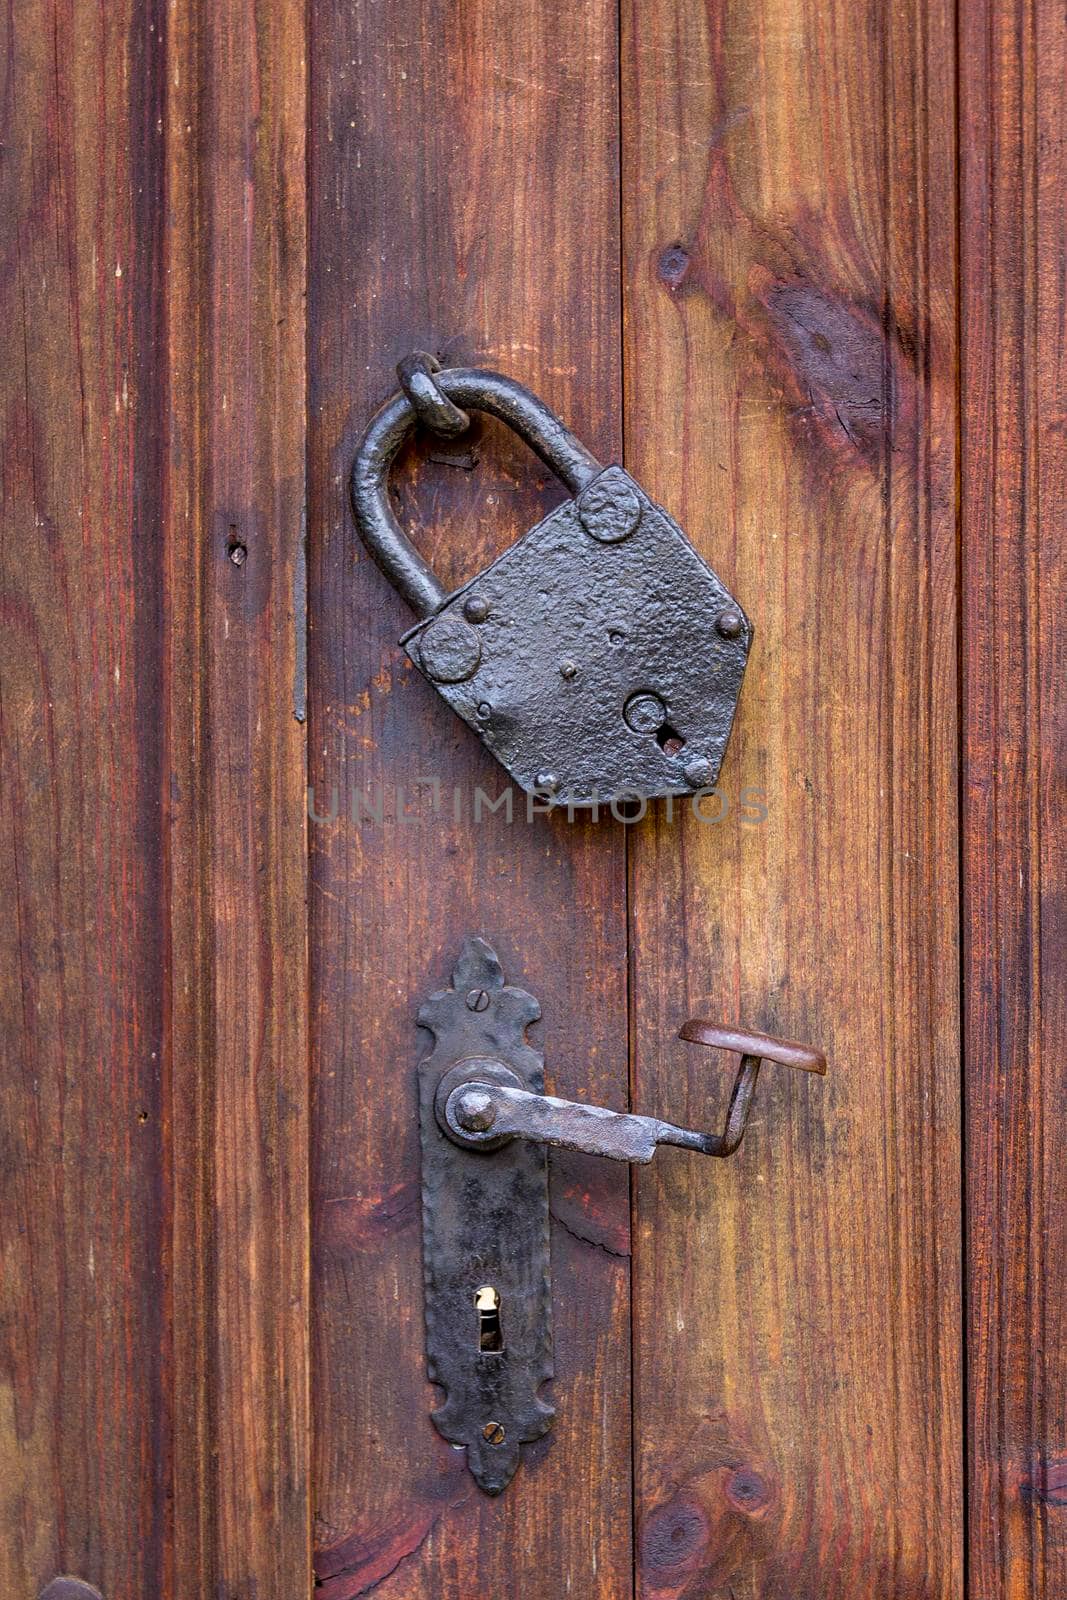 Door handle and a metal vintage padlock on the wooden door. True retro style. Close